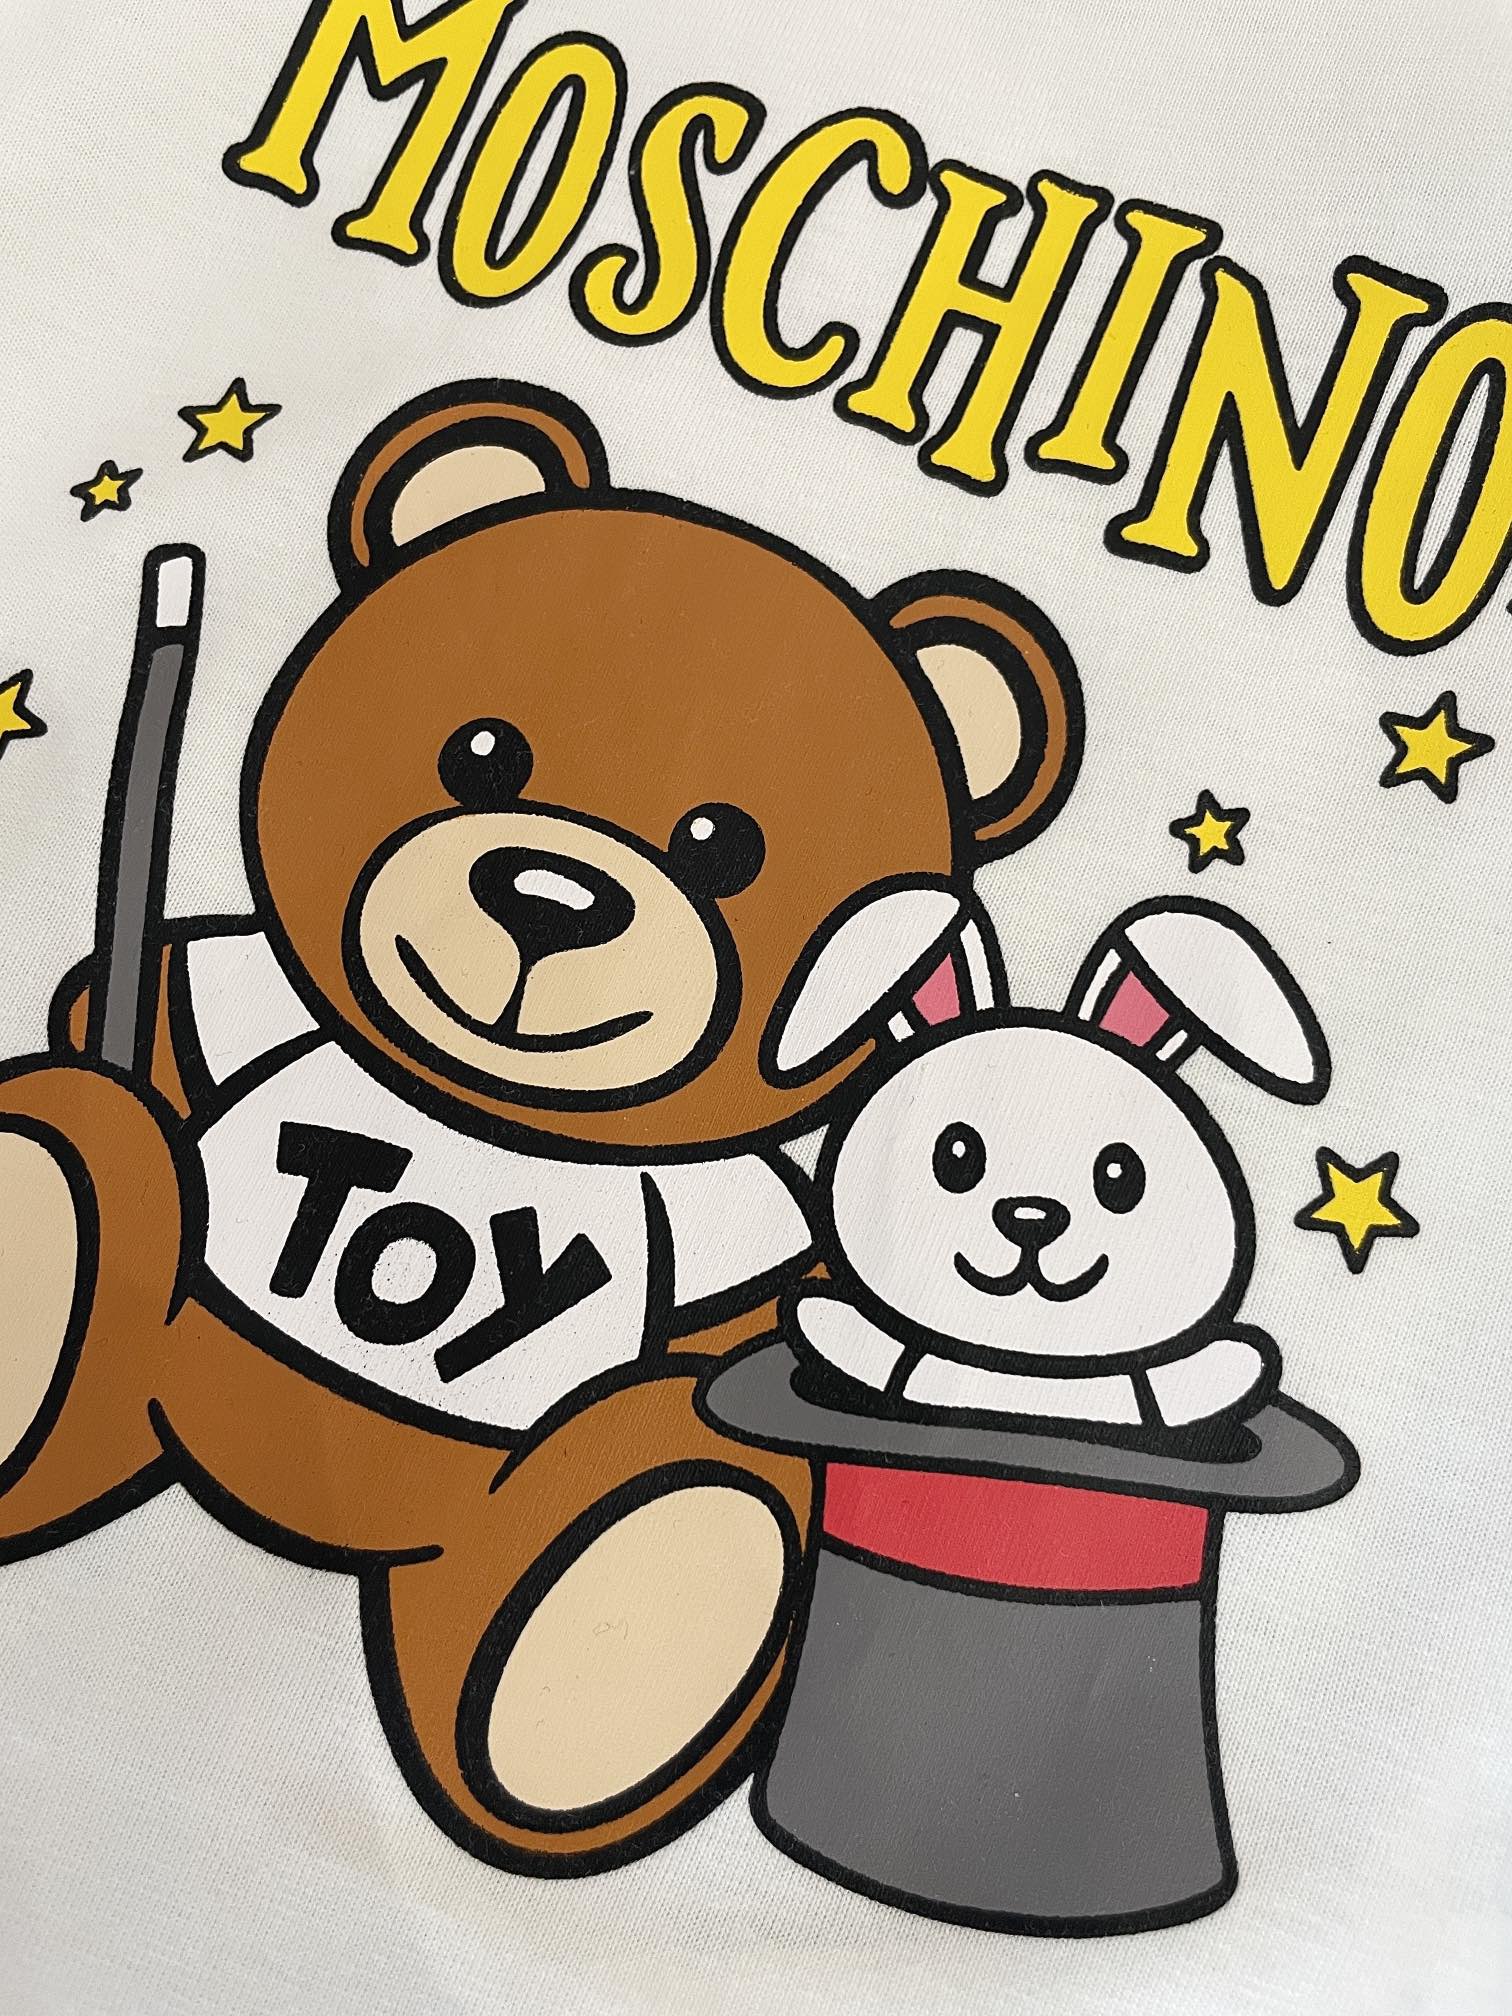 Moschino童装-限量魔法熊🐻T恤